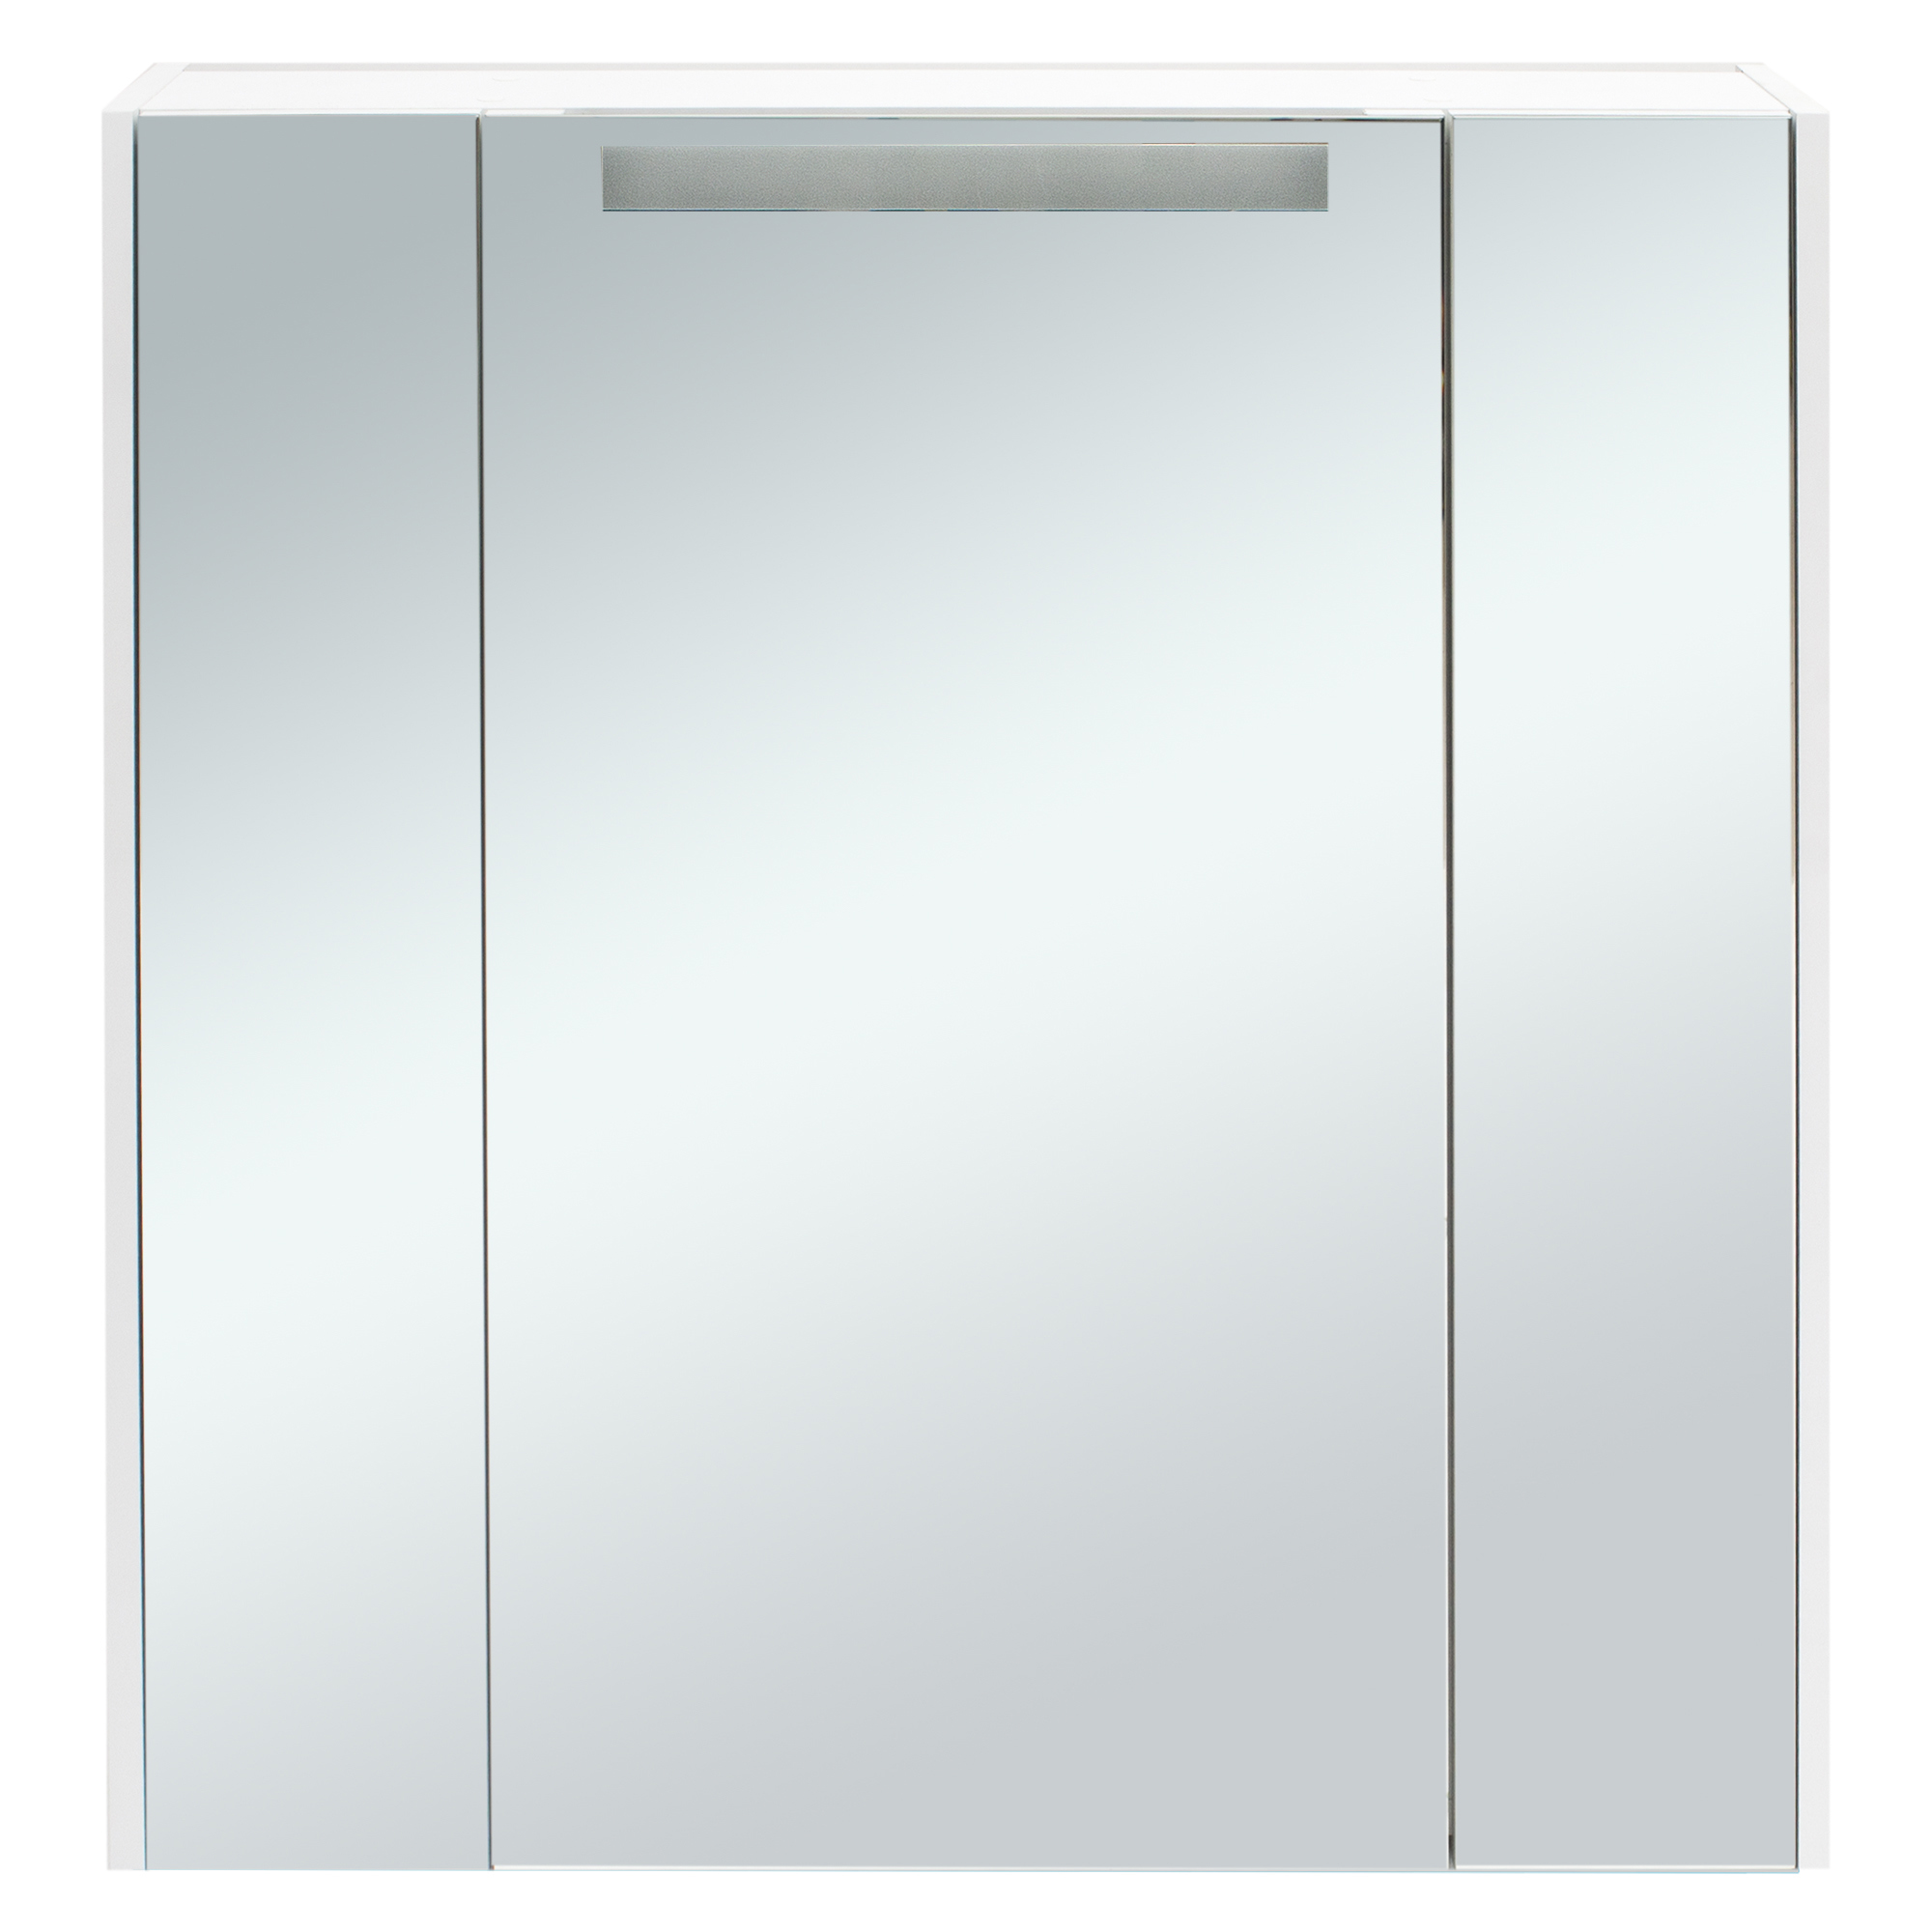 Шкаф с зеркалом для ванной комнаты навесной. Шкаф зеркальный Aquaton «Мерида» 80 см цвет белый. Акватон зеркальный шкаф 80. Акватон Мерида 65. Валеро шкаф зеркальный 80 см.